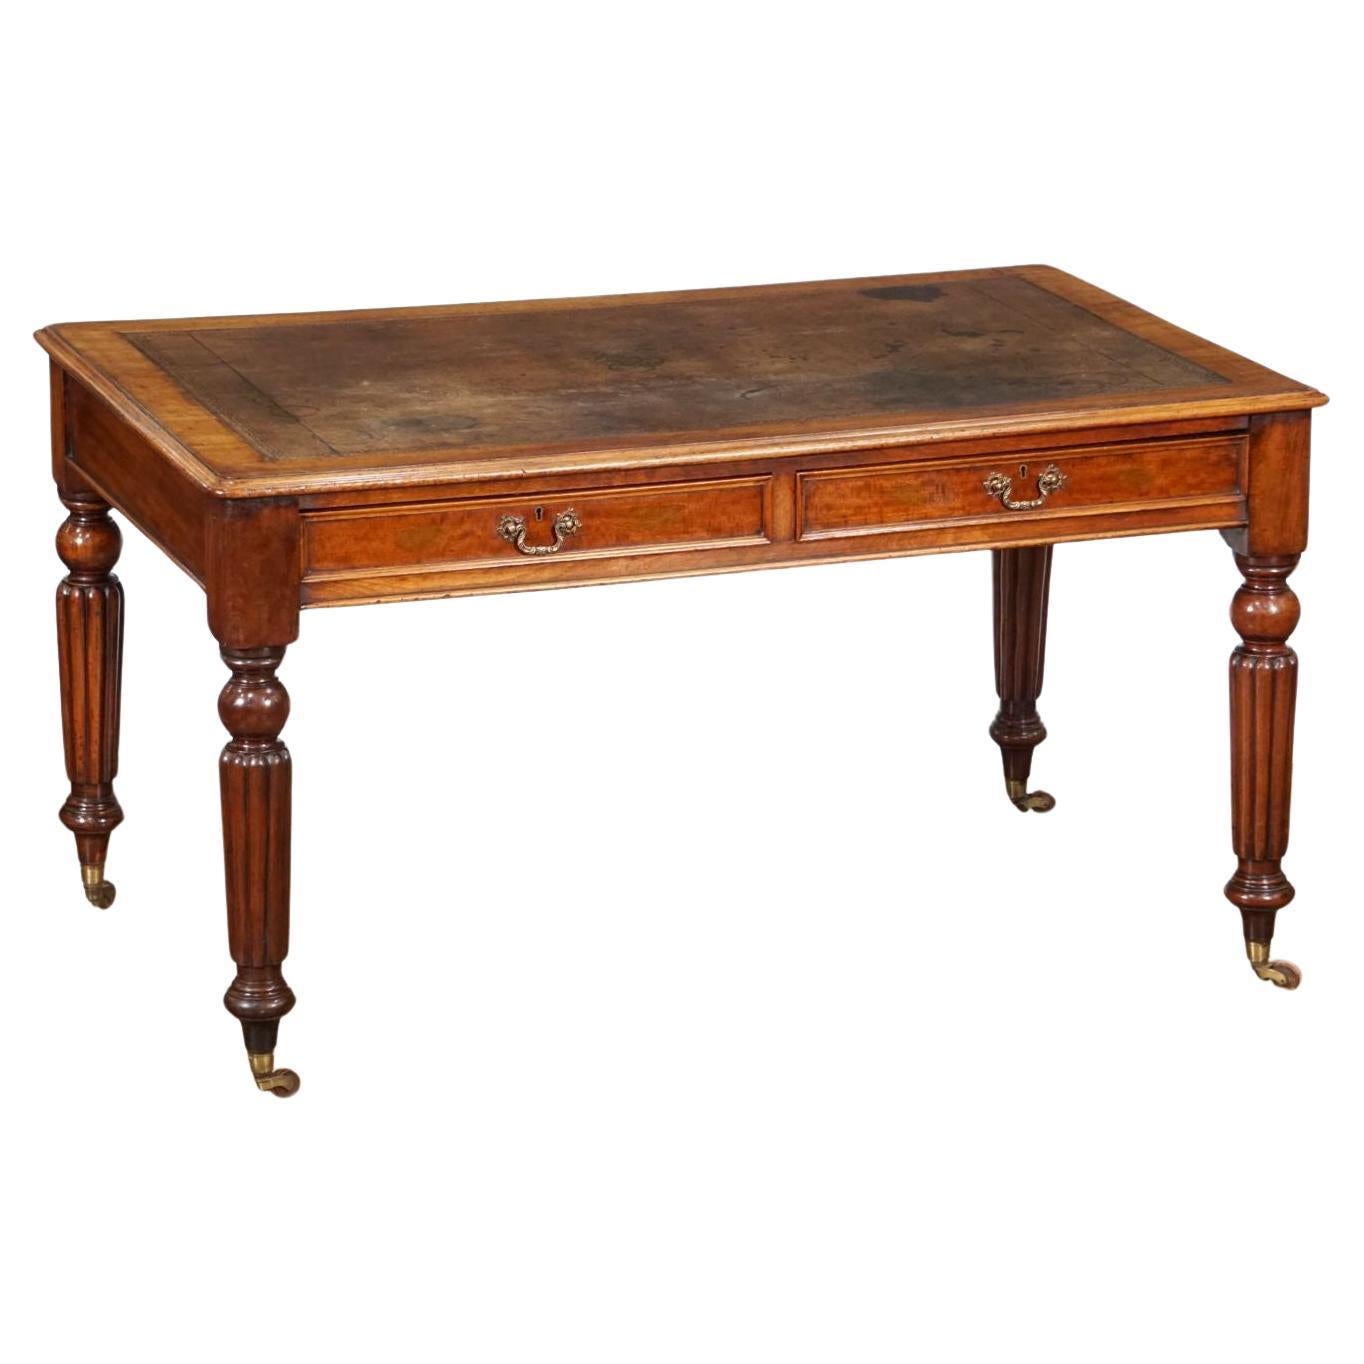 Table ou bureau anglais à écrire avec plateau en cuir embossé de style William IV